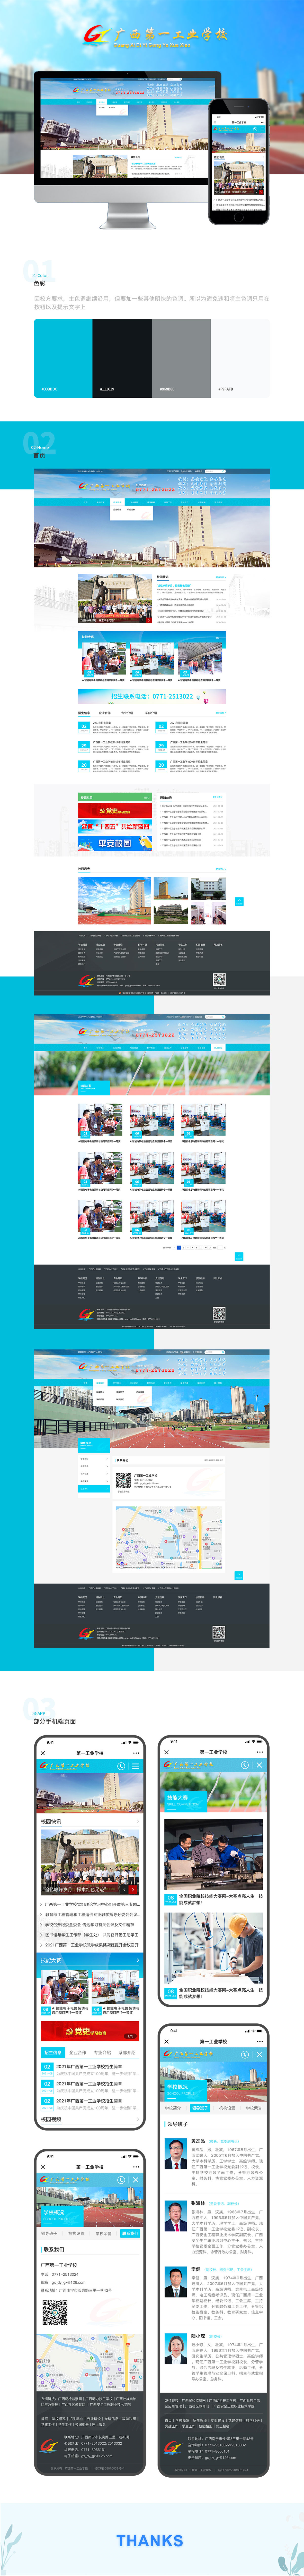 广西第一工业学校aoa web版设计详情页